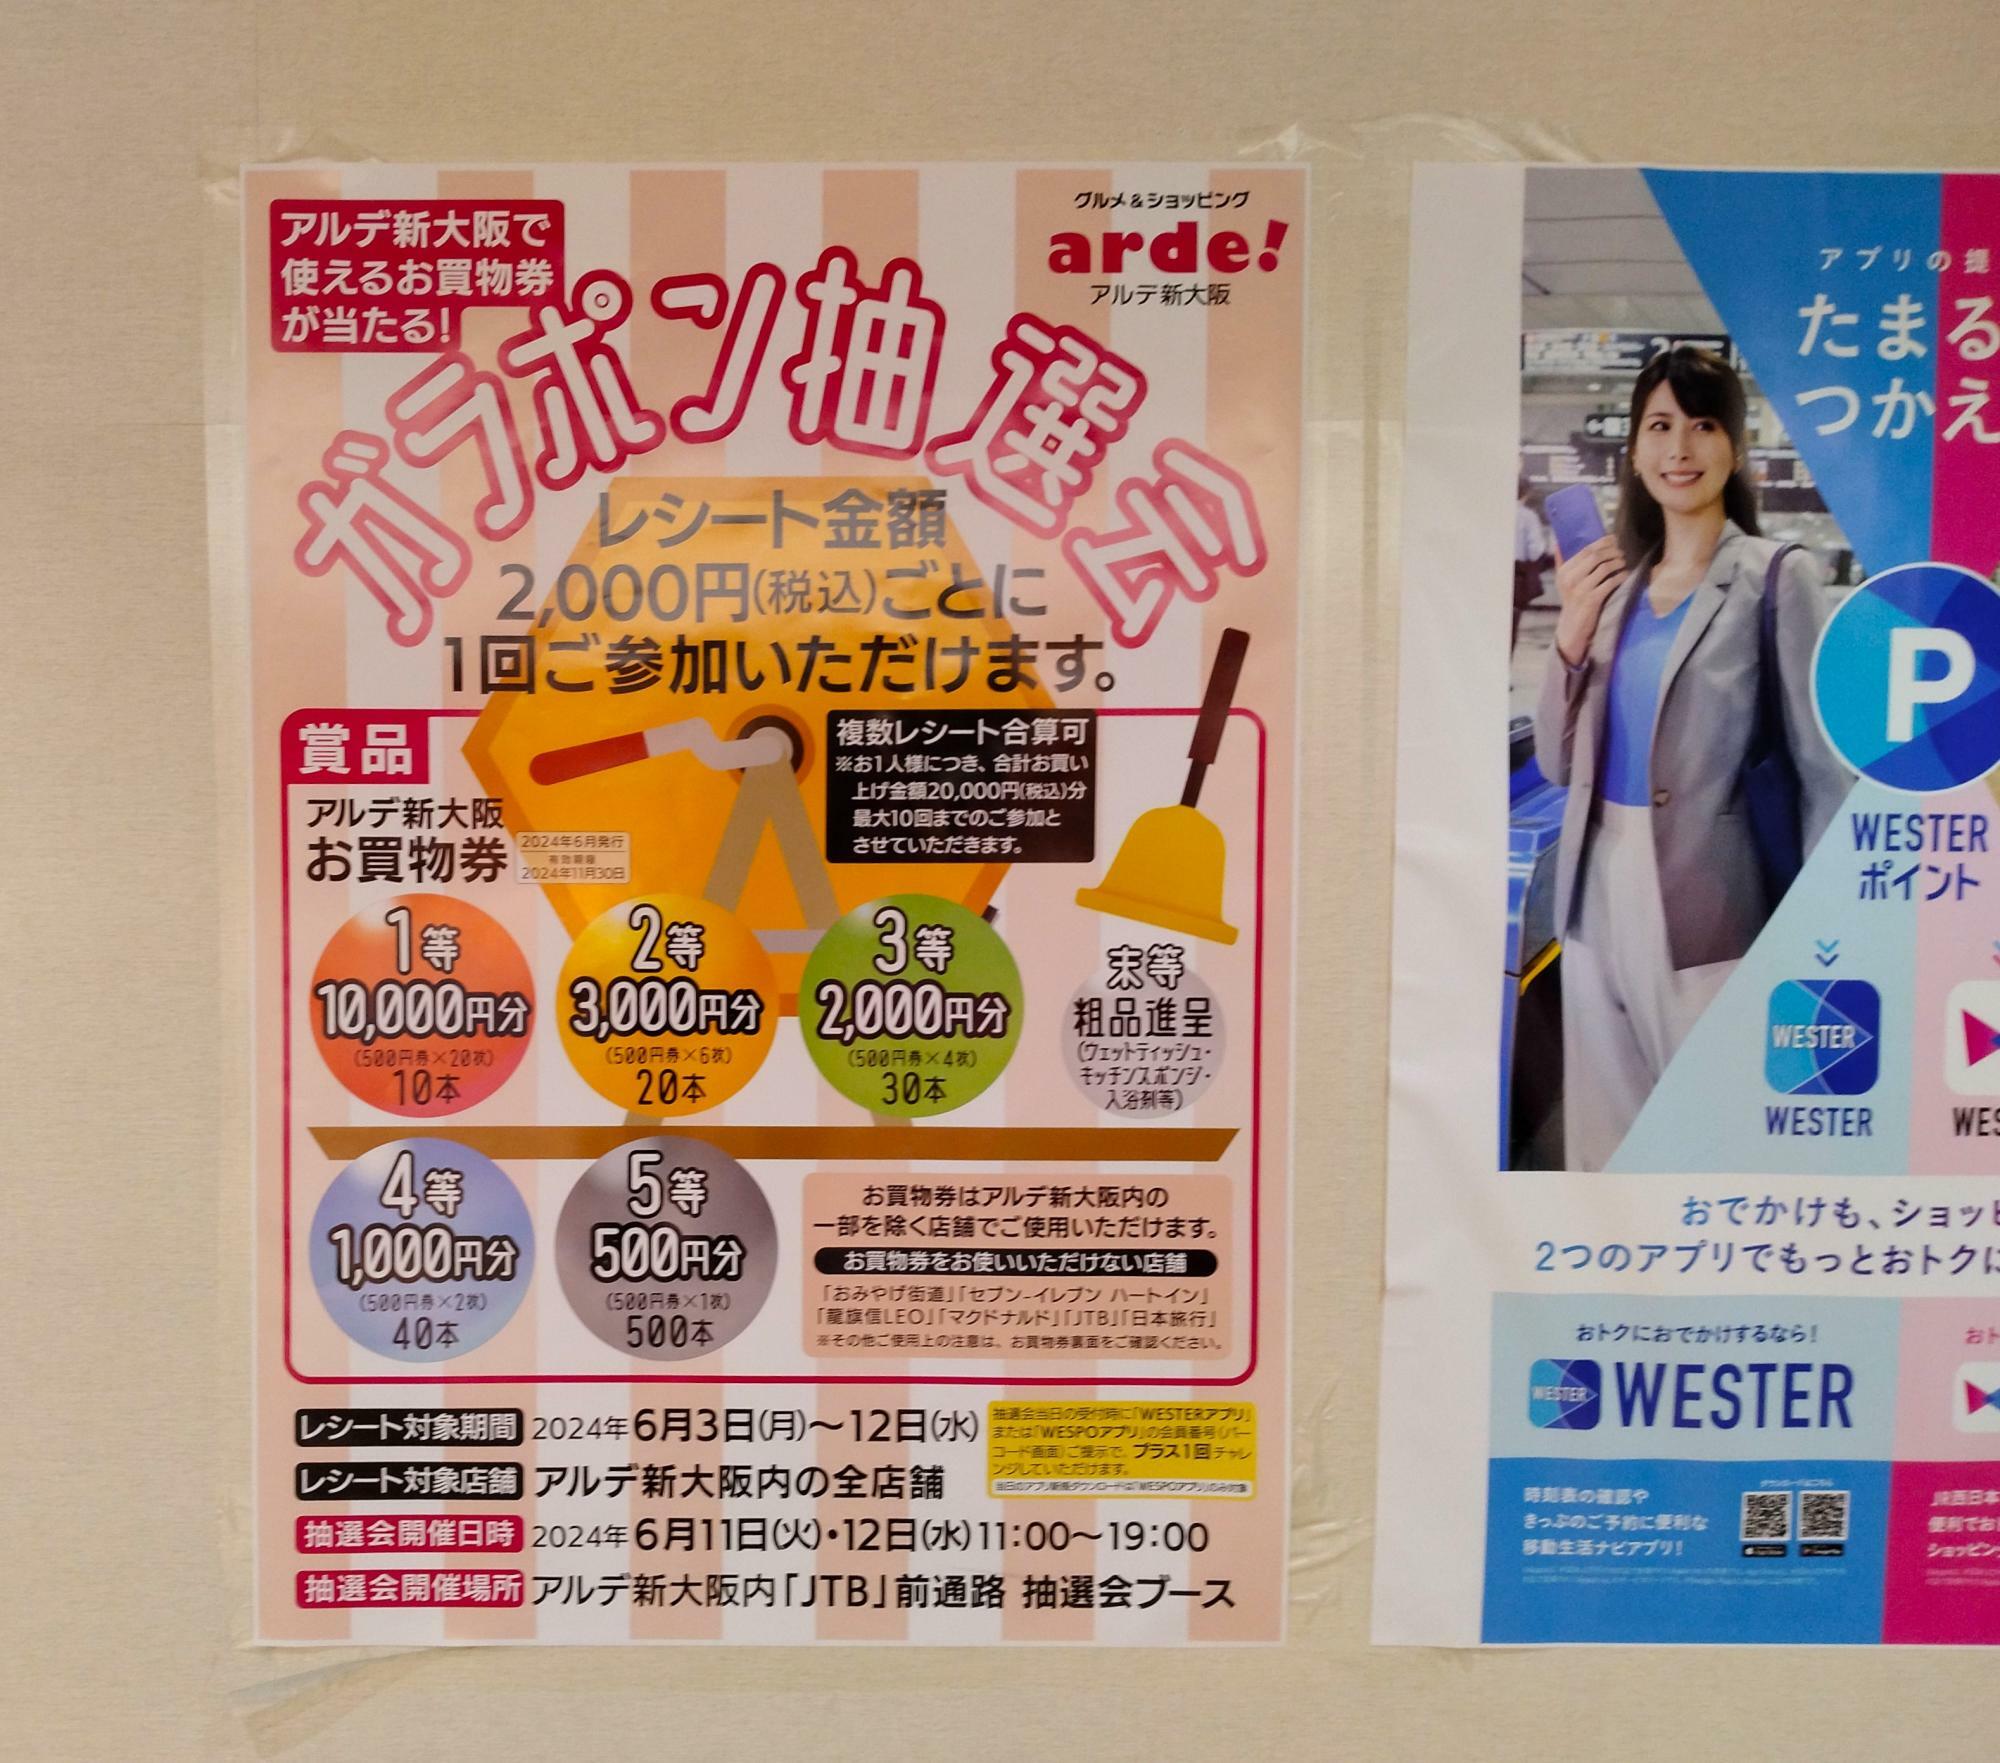 通路に貼られた「アルデ新大阪ガラポン抽選会」のポスター。